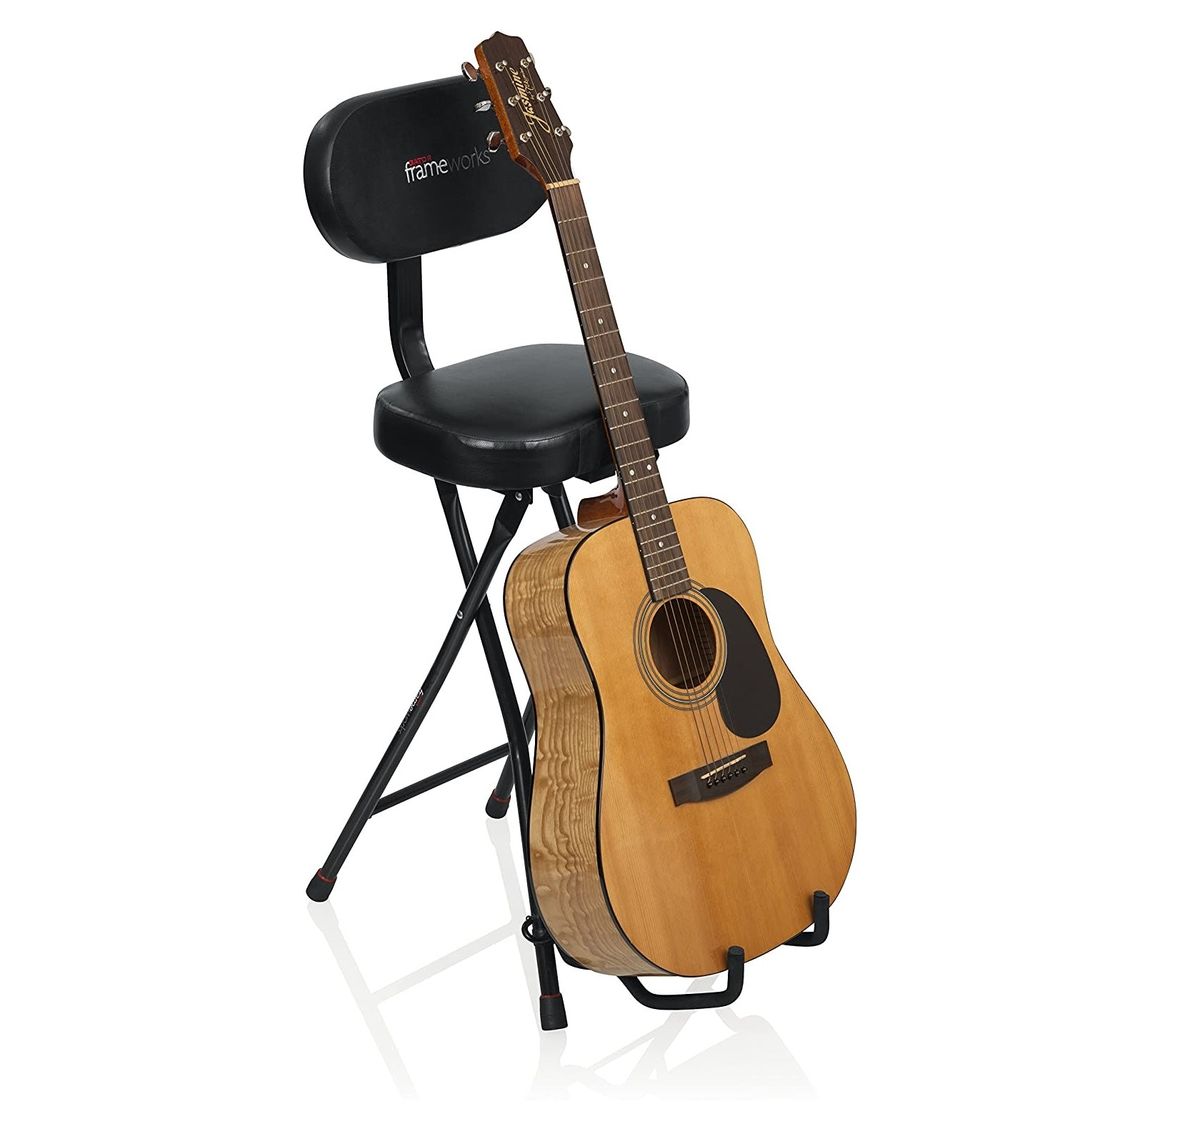 4 најбоље столице за гитару, према Амазон рецензентима